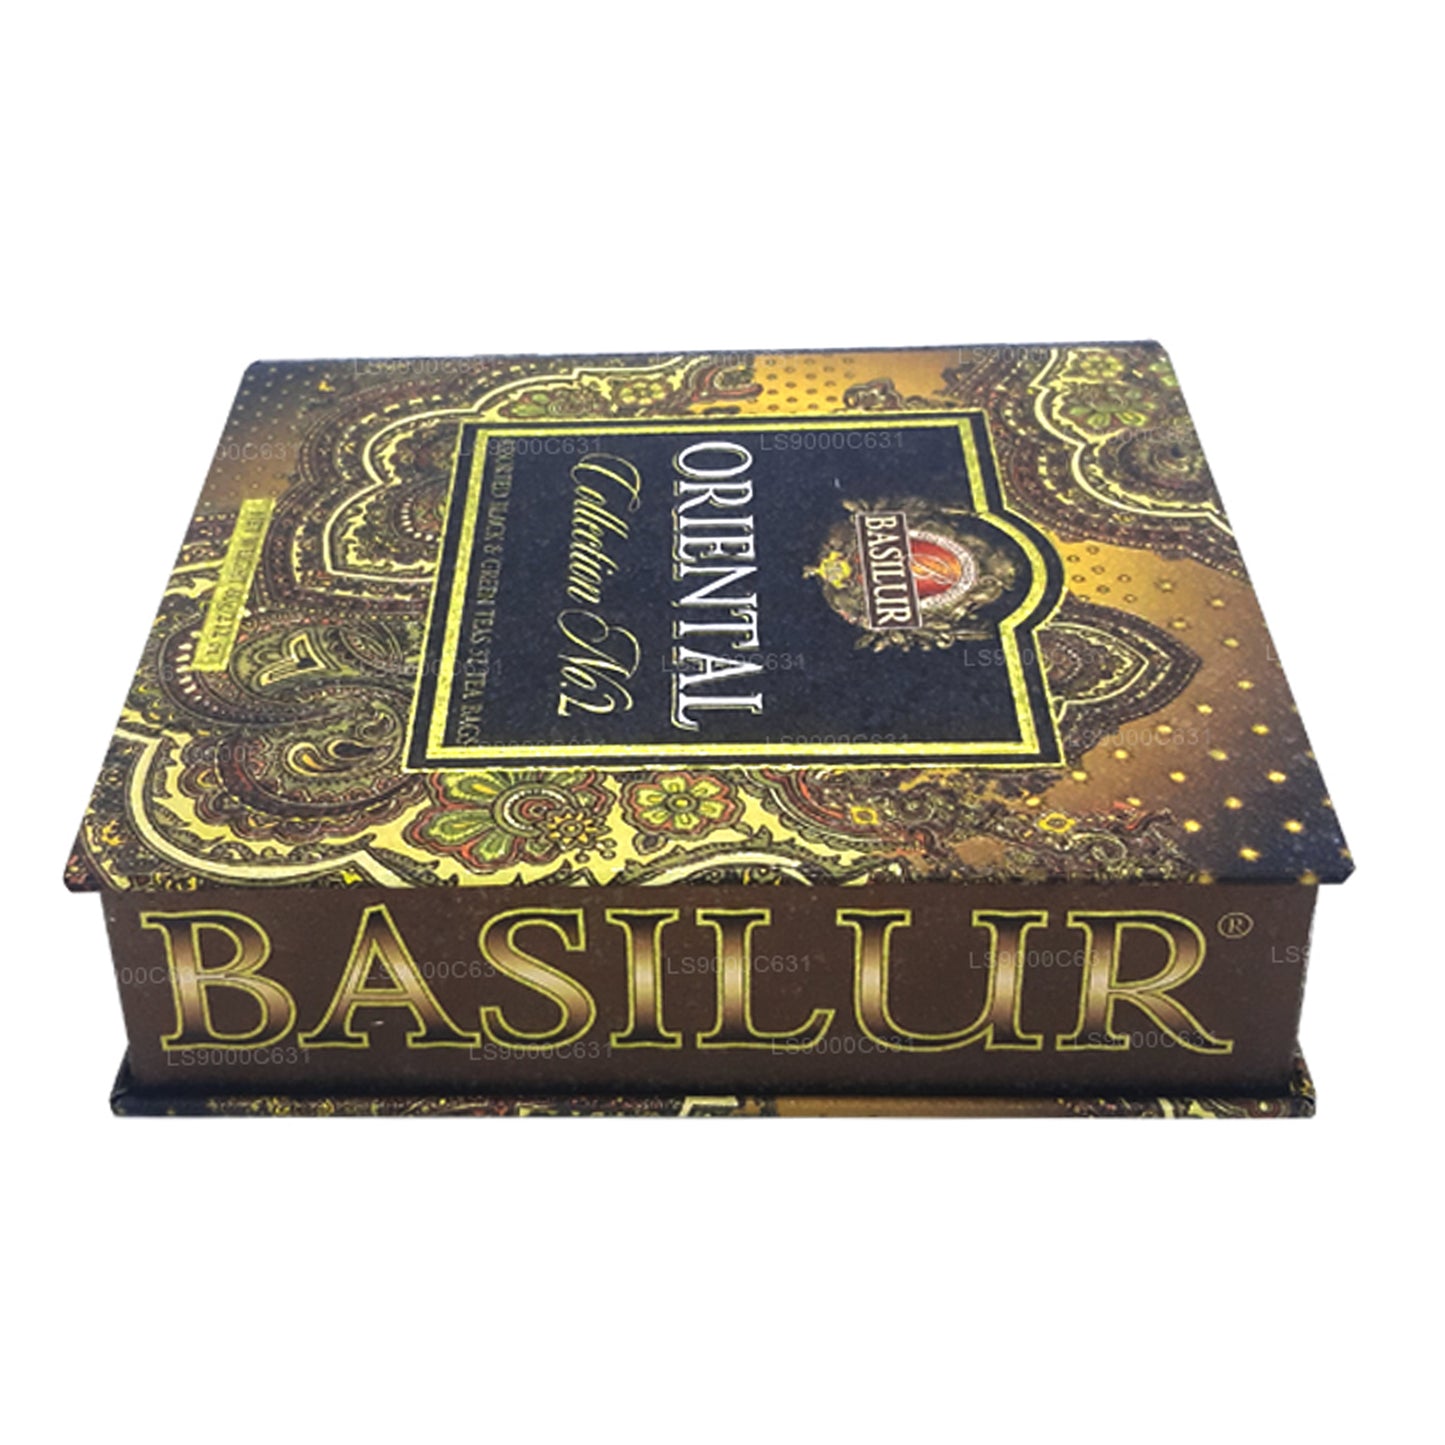 Чайная книга «Восточная коллекция Basilur», том 2 (60 г), 32 пакетика чая